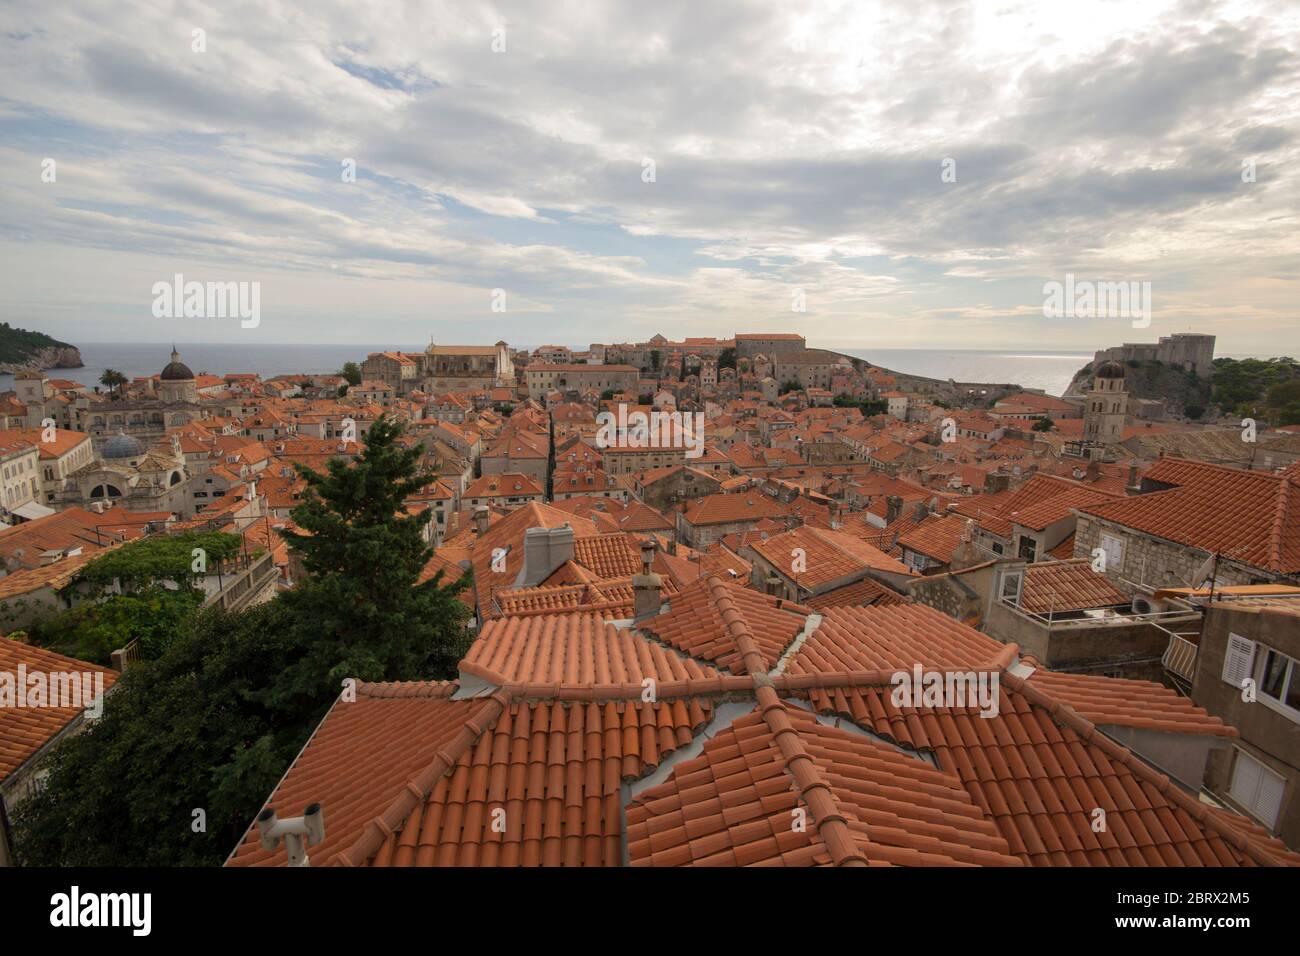 Dubrovnik ist eine Stadt an der Adria im Süden Kroatiens. Es ist eines der bekanntesten touristischen Ziele im Mittelmeer. Stockfoto